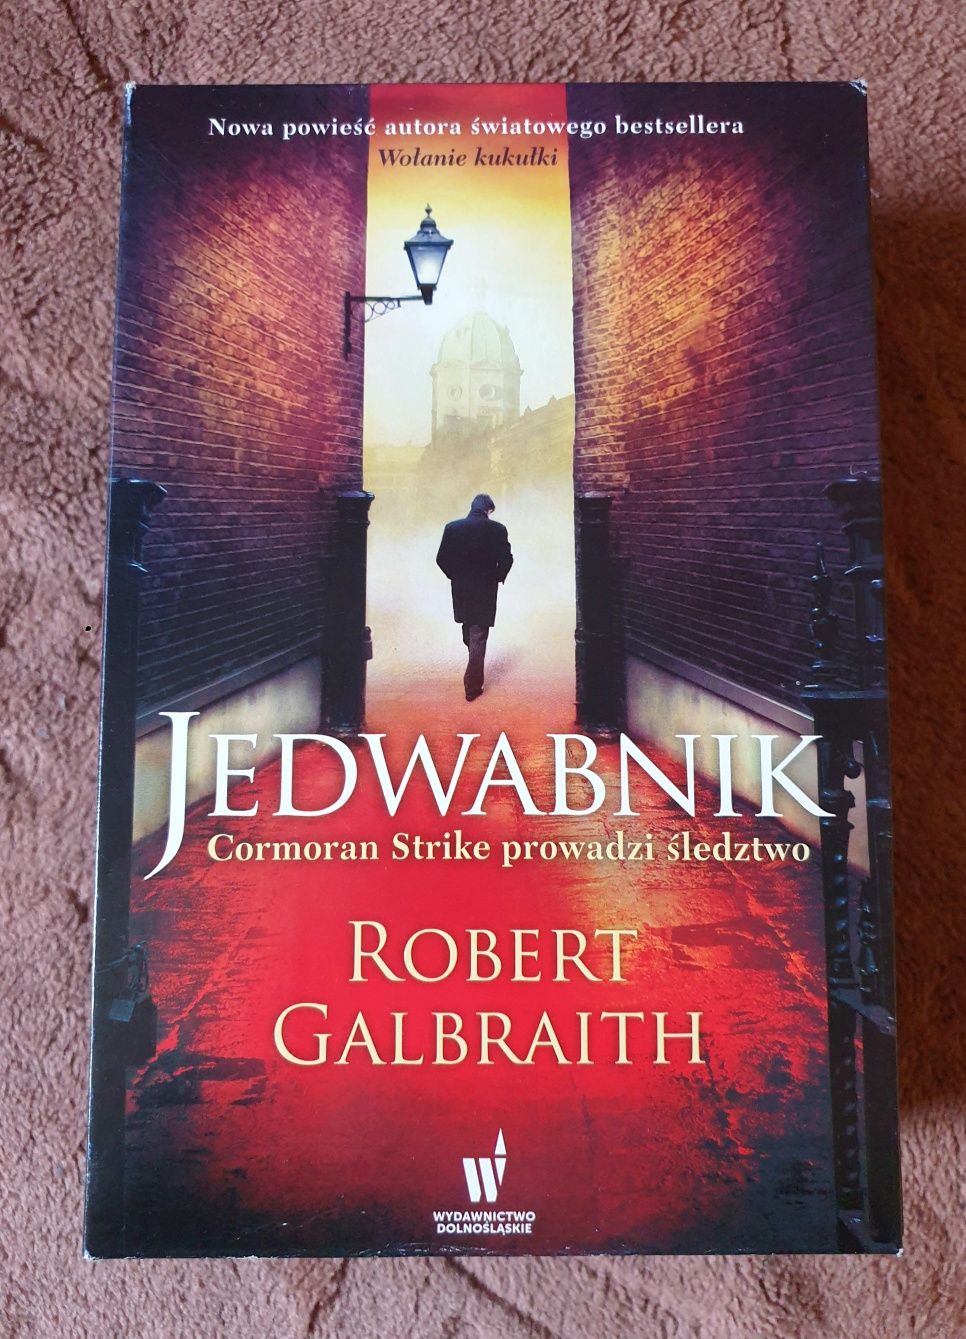 2x Robert Galbraith (Rowling) wołanie kukułki jedwabnik książka